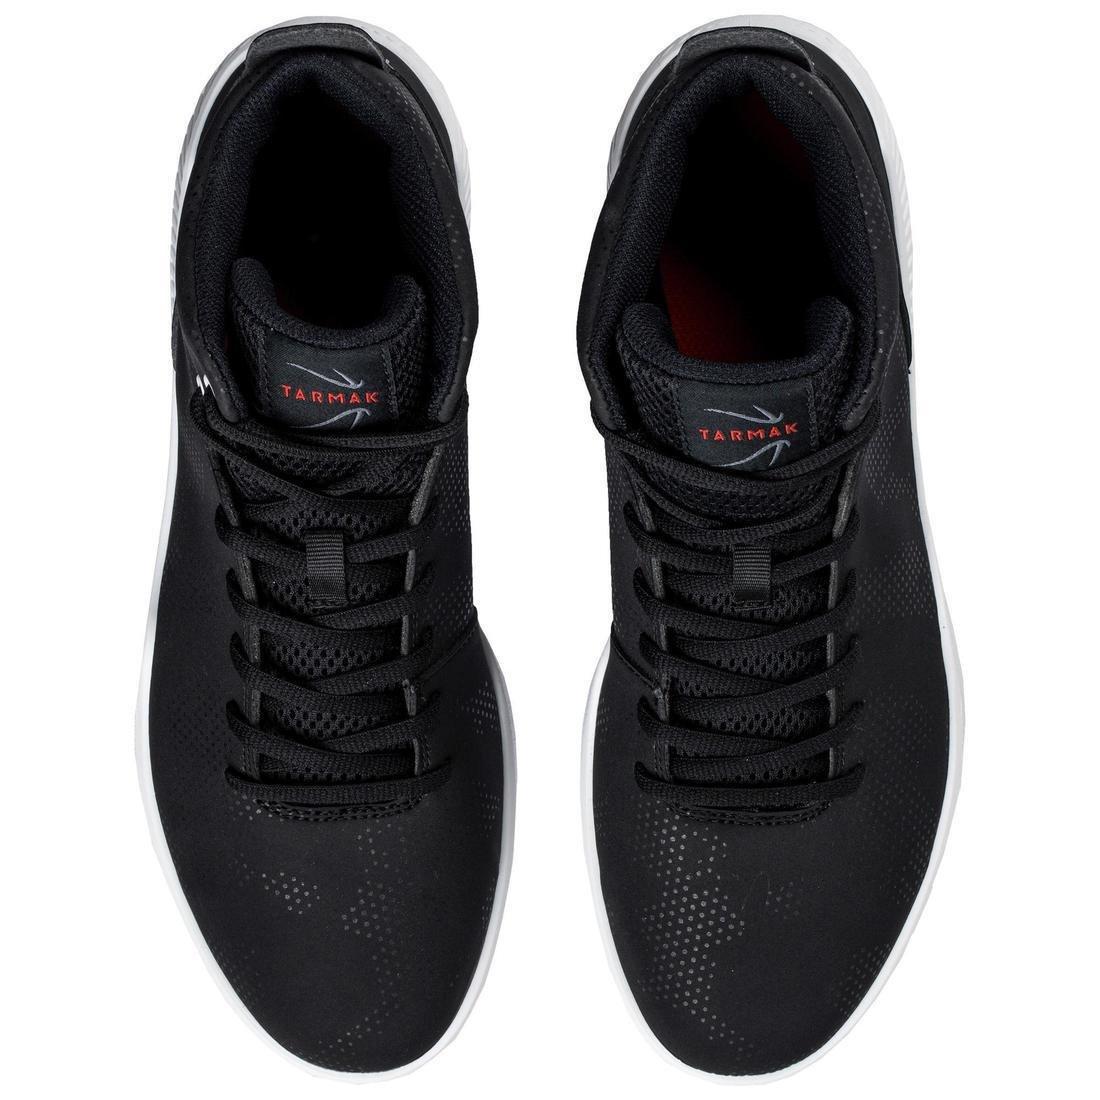 TARMAK - Mens/Womens Beginner High-RiseBasketball Shoes Protect100 , Black